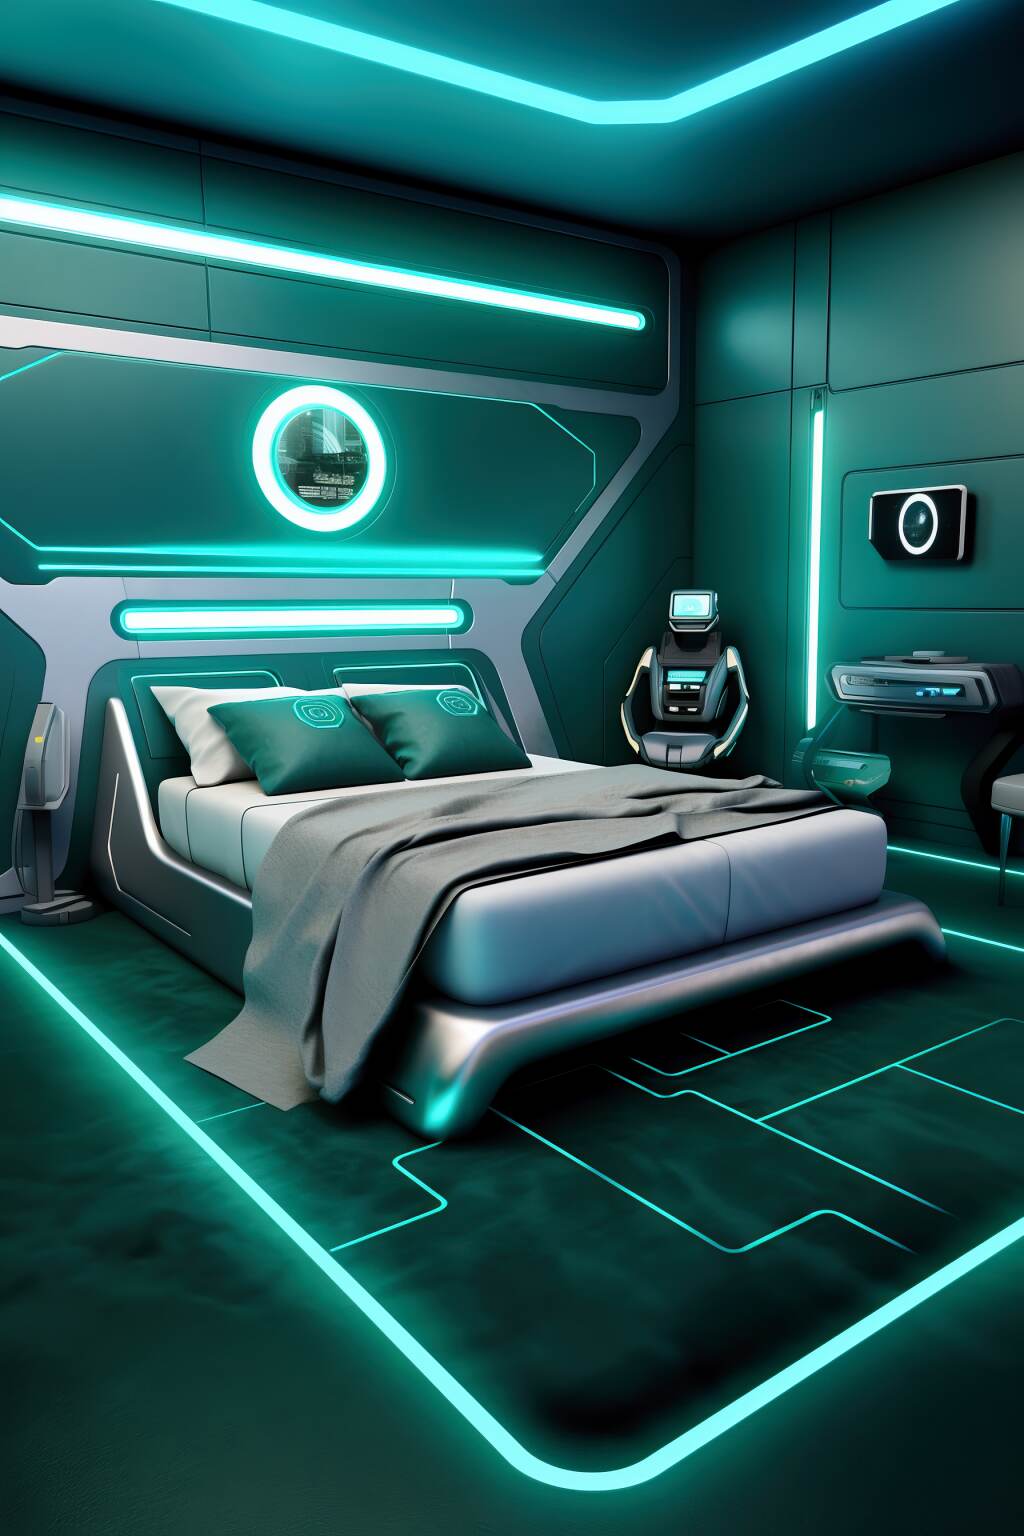 Futuristic Teal Bedroom